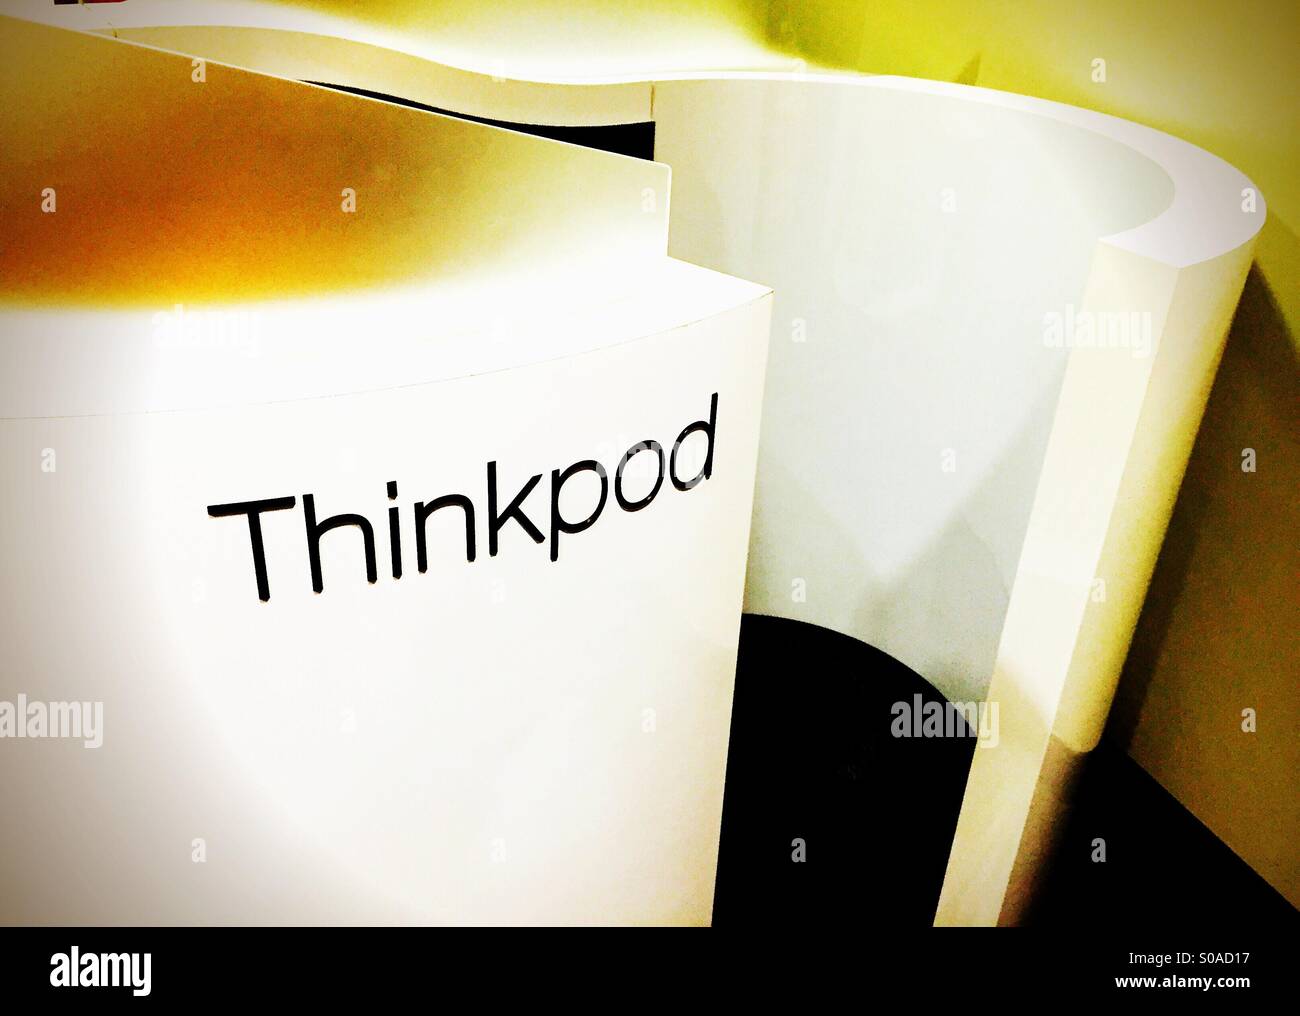 Un Thinkpod, utilizadas para promover la productividad, la creatividad y la resolución de problemas. Foto de stock